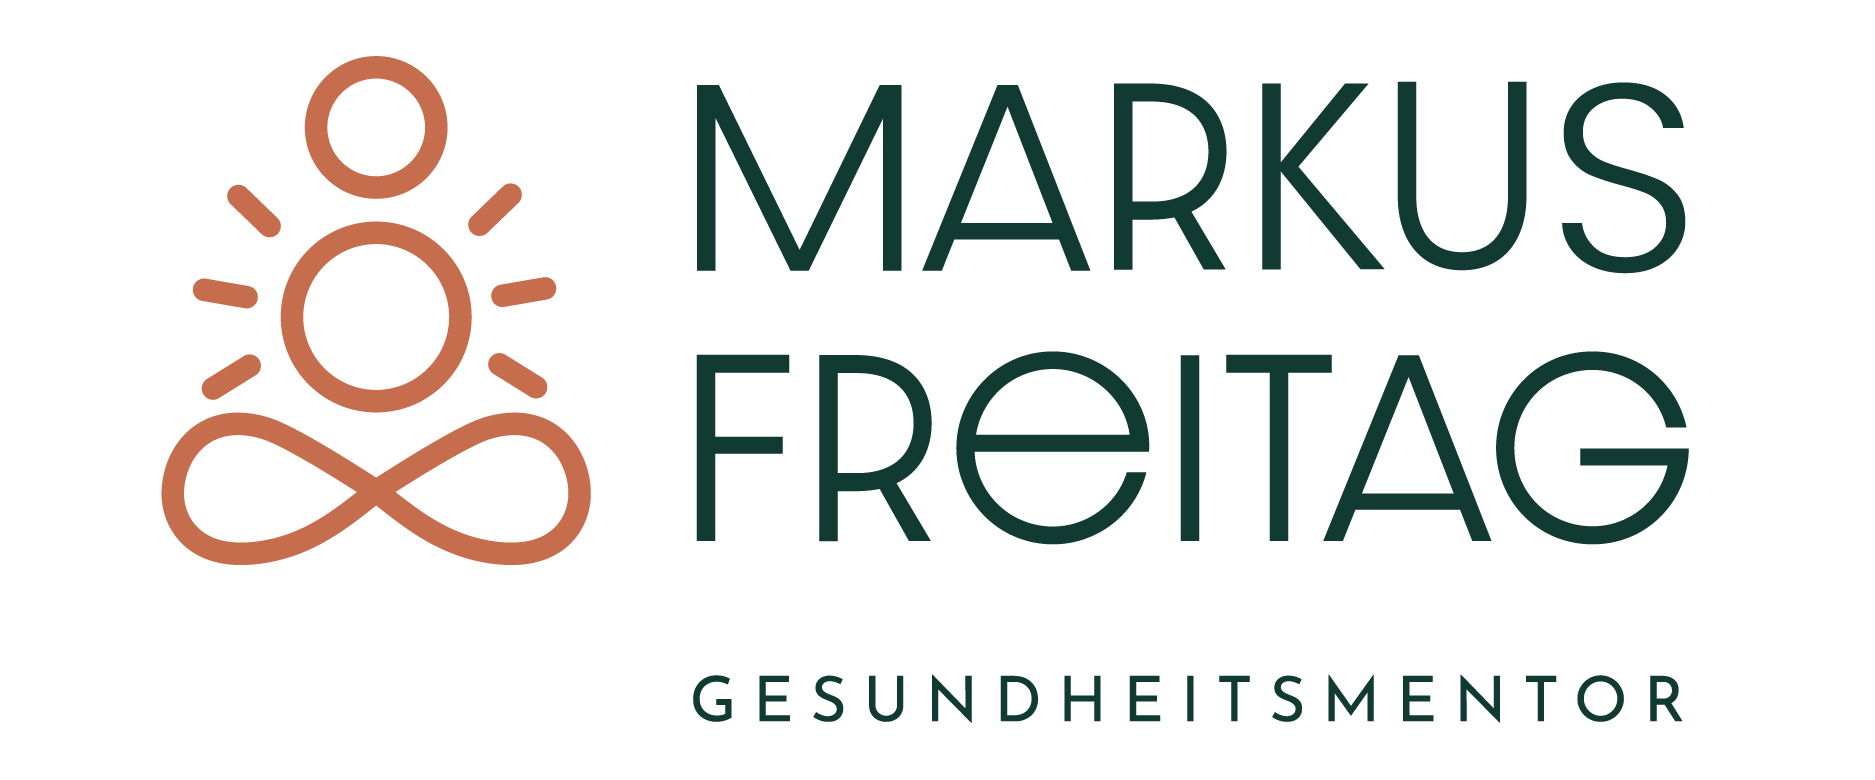 Markus Freitag